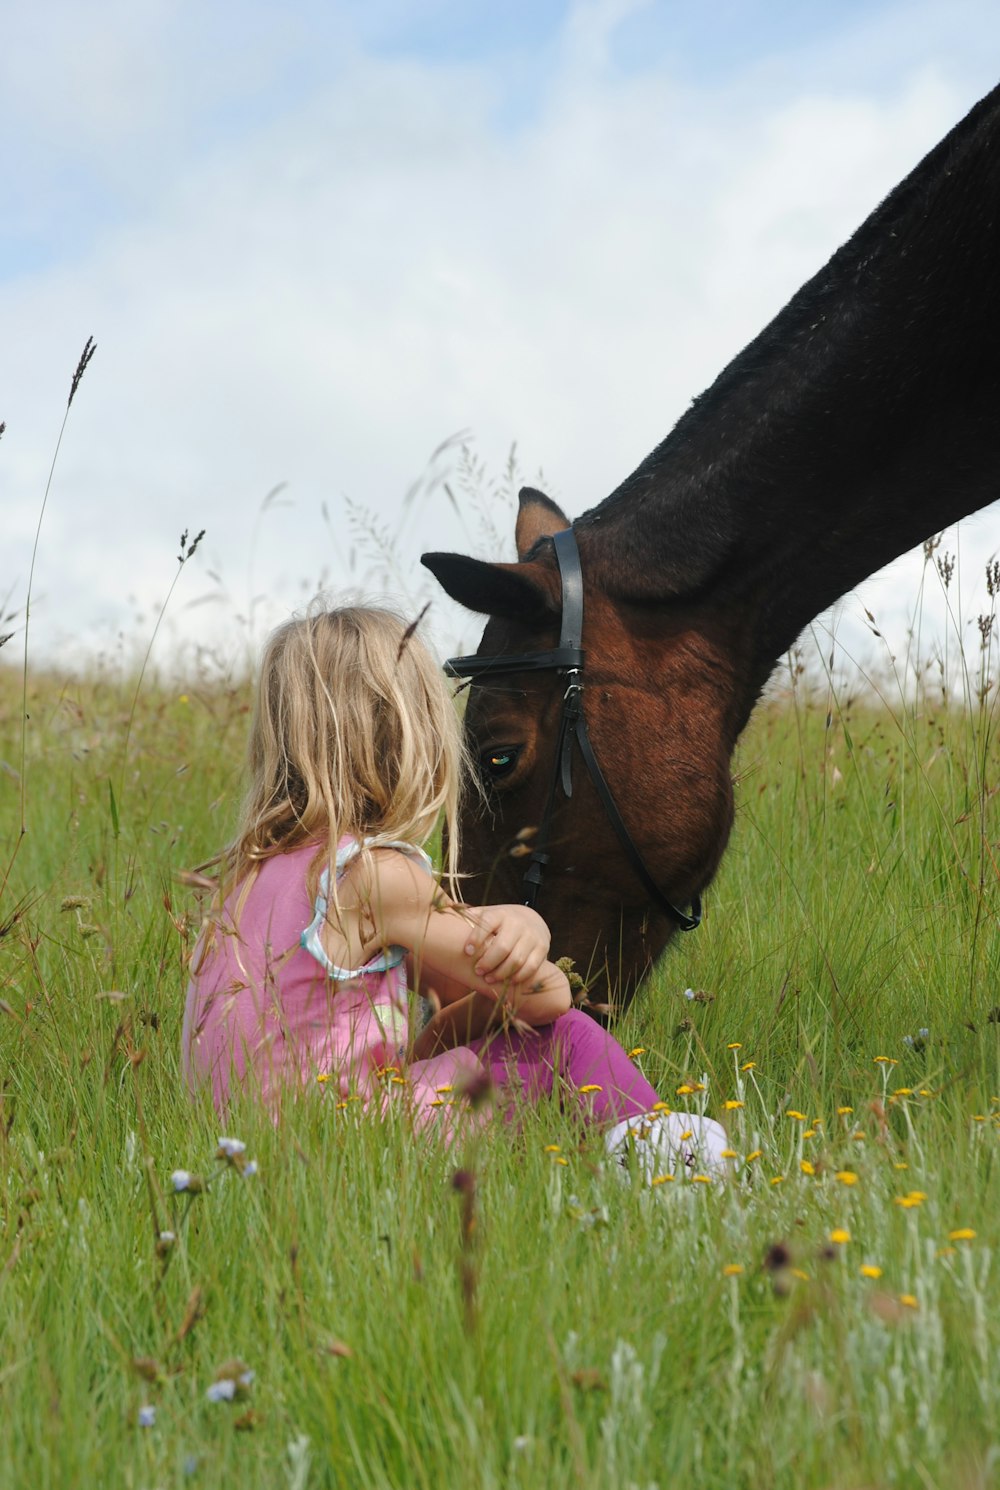 Bambino seduto accanto al cavallo marrone durante il giorno